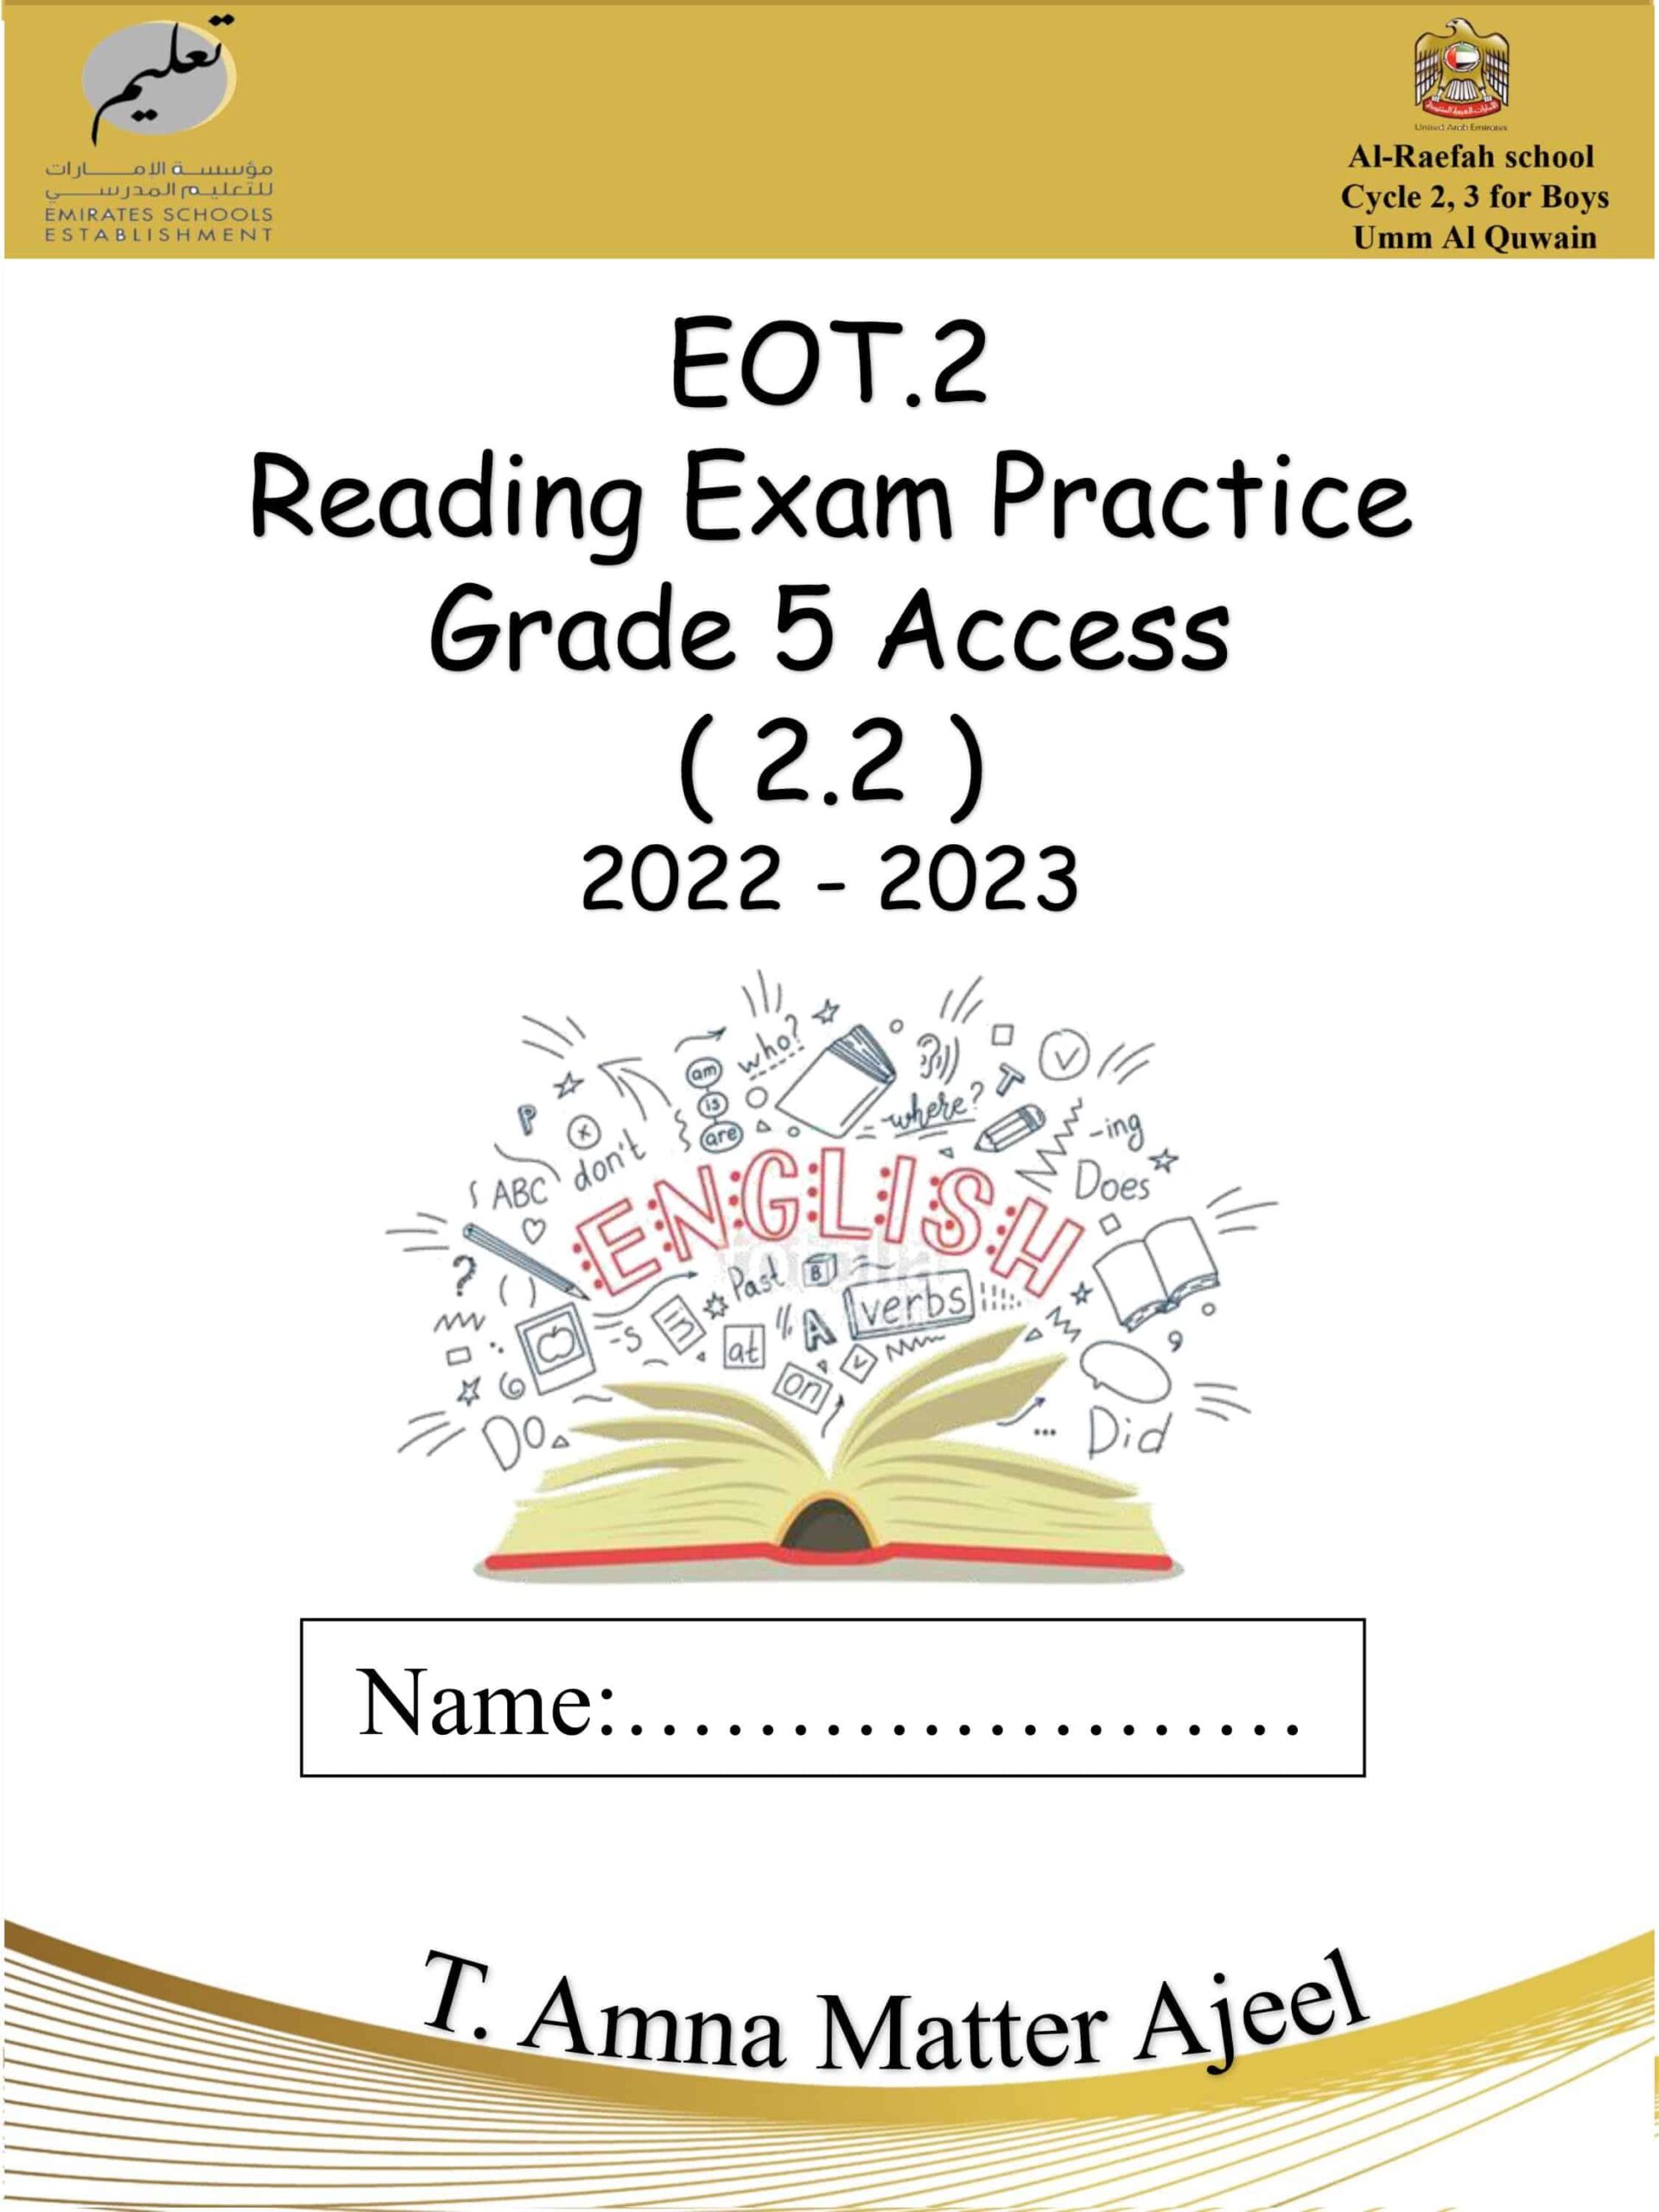 أوراق عمل Reading Exam Practice اللغة الإنجليزية الصف الخامس Access